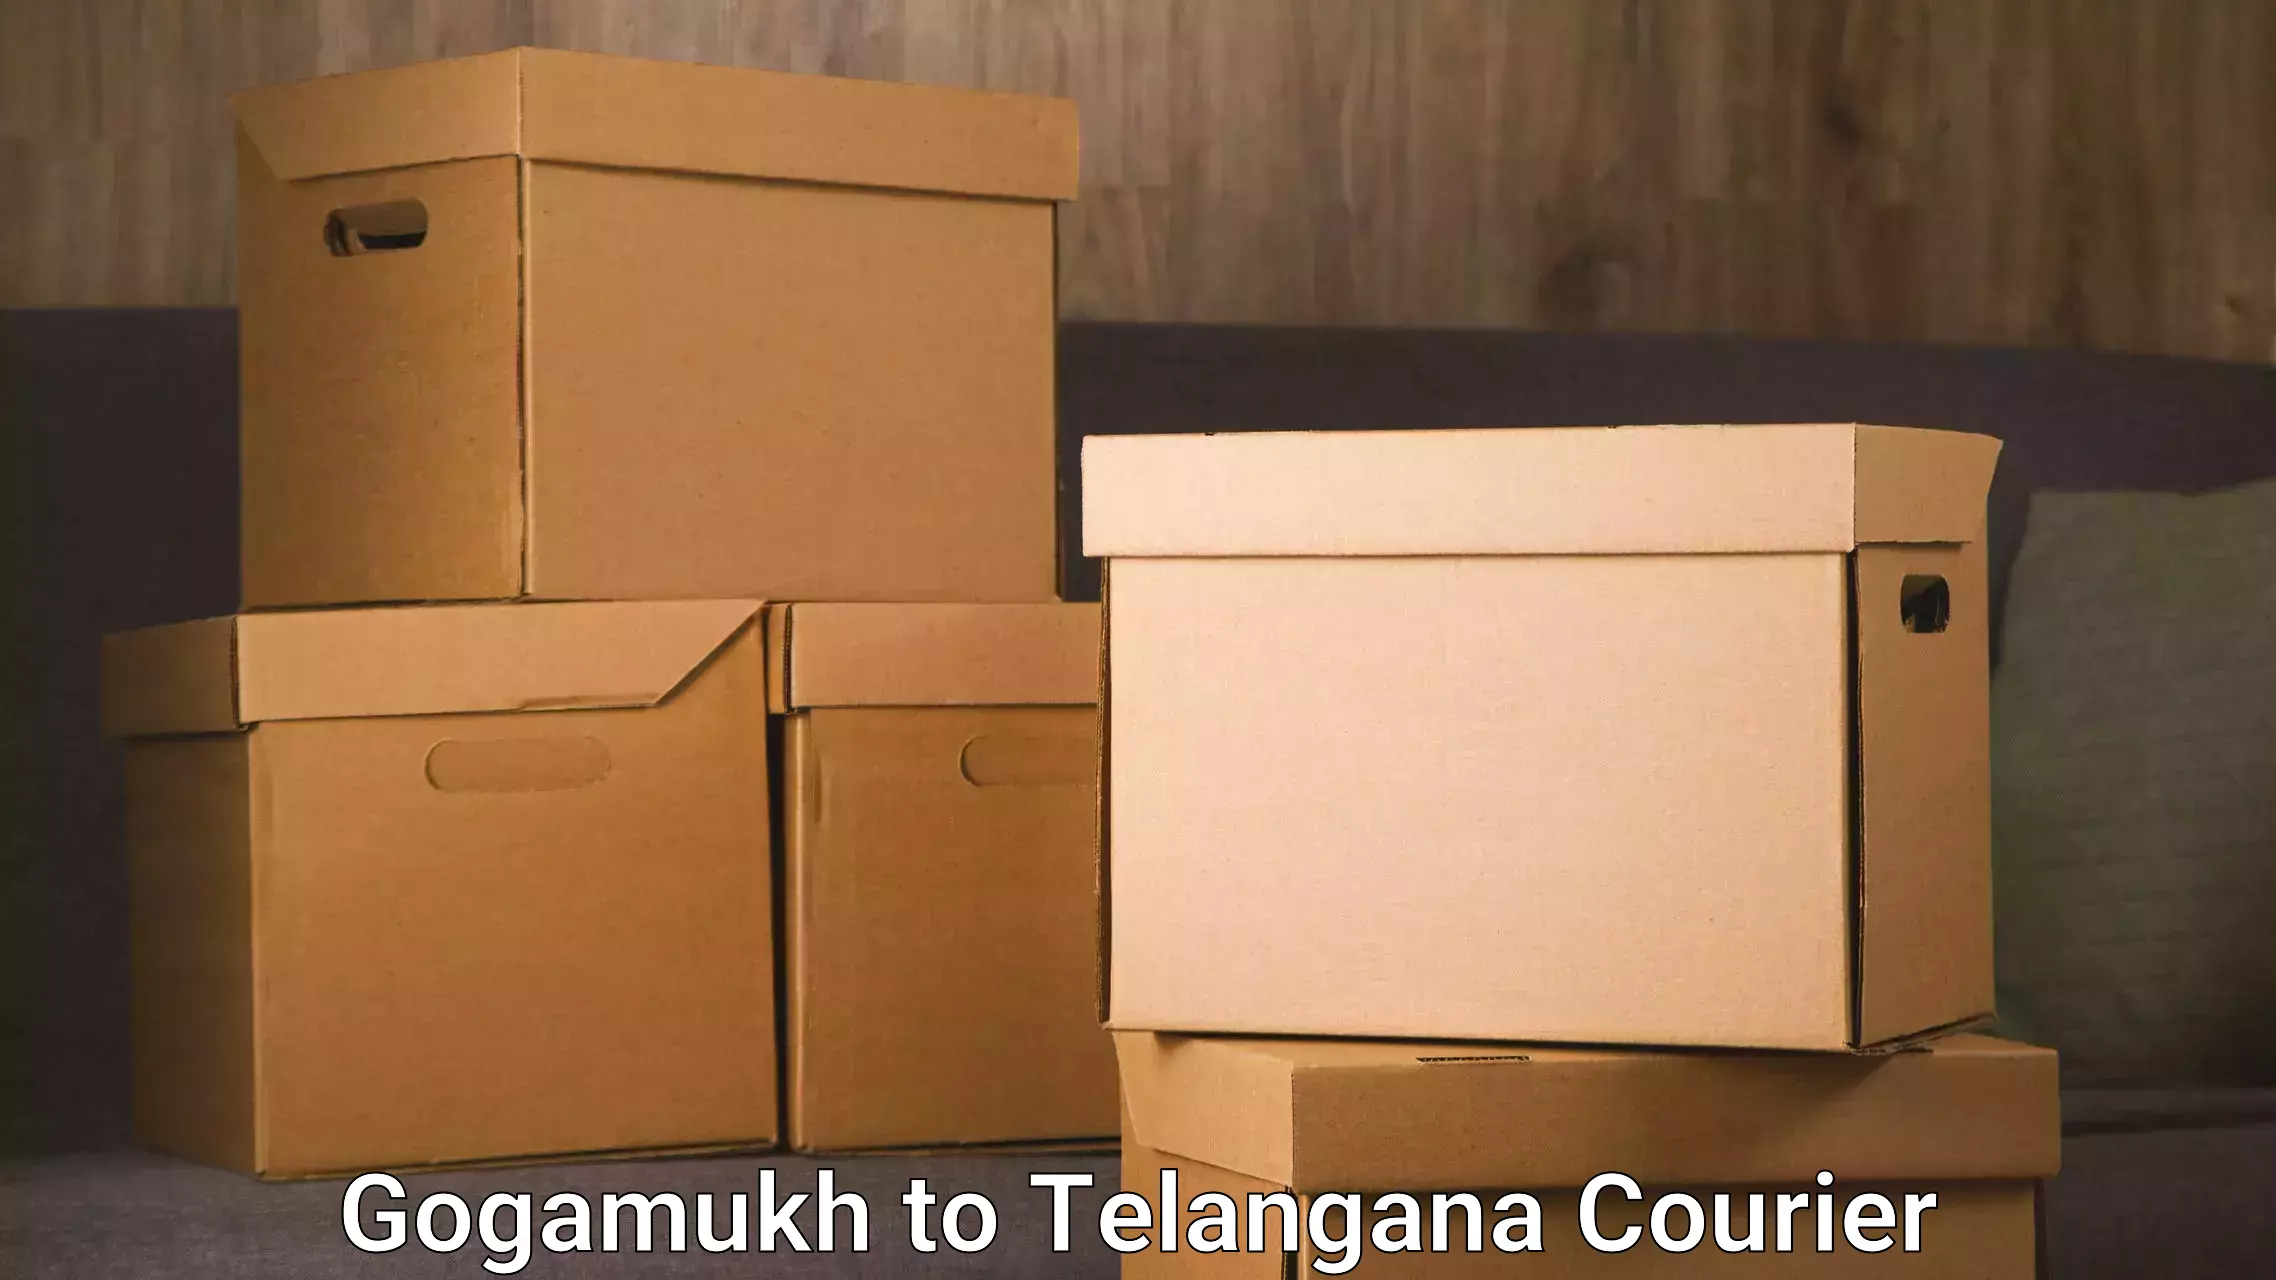 Express logistics providers Gogamukh to Telangana